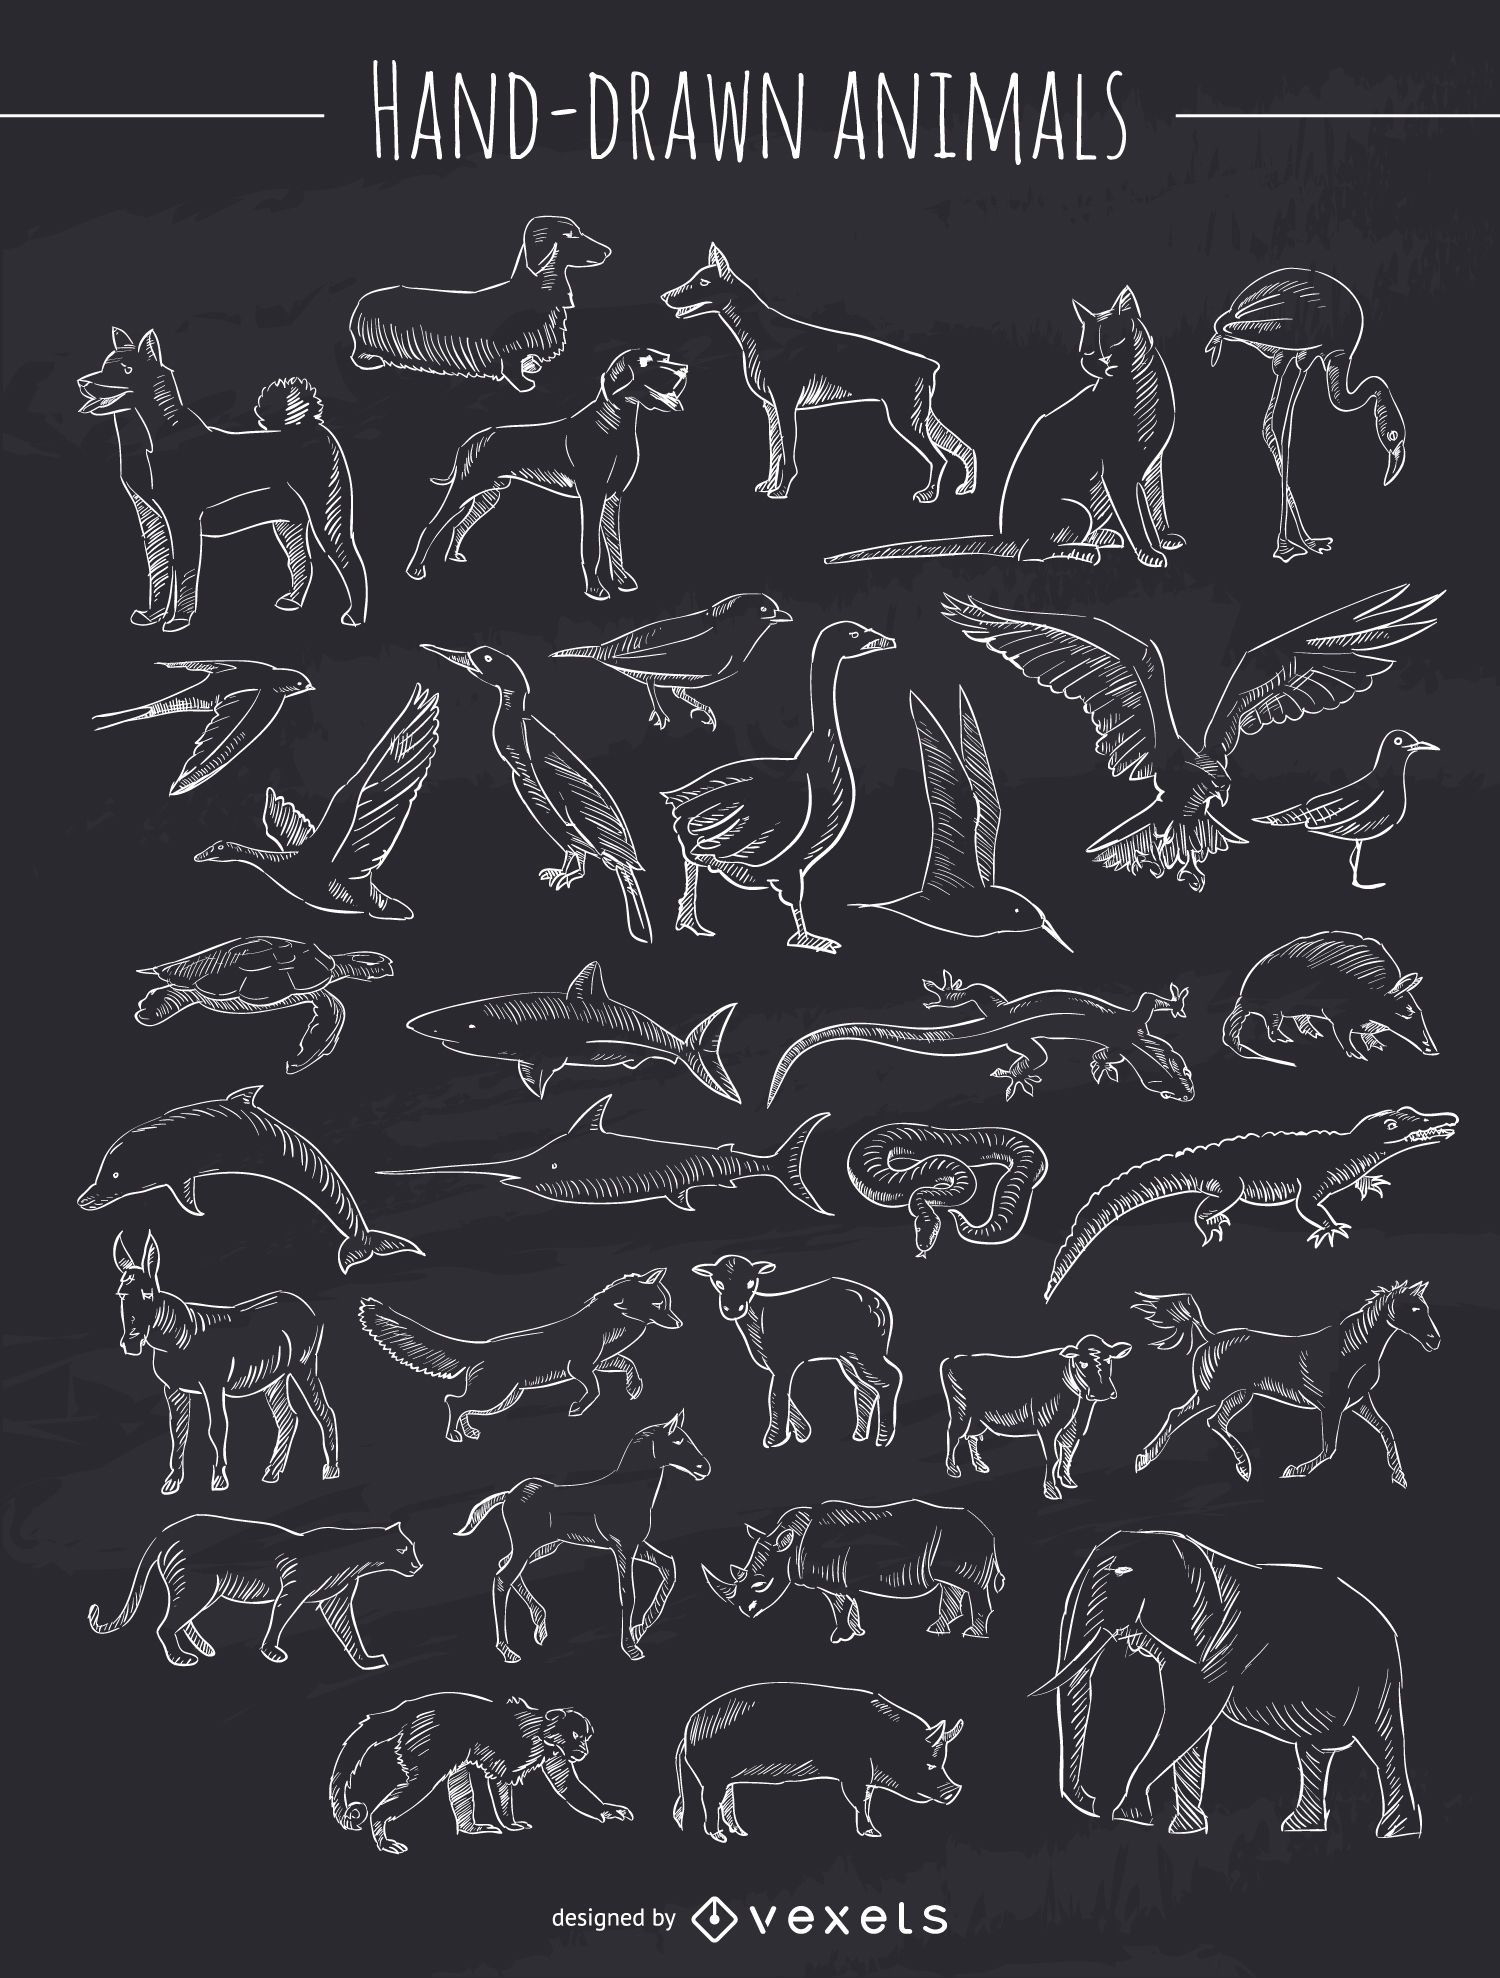 Chalk hand-drawn animals collection